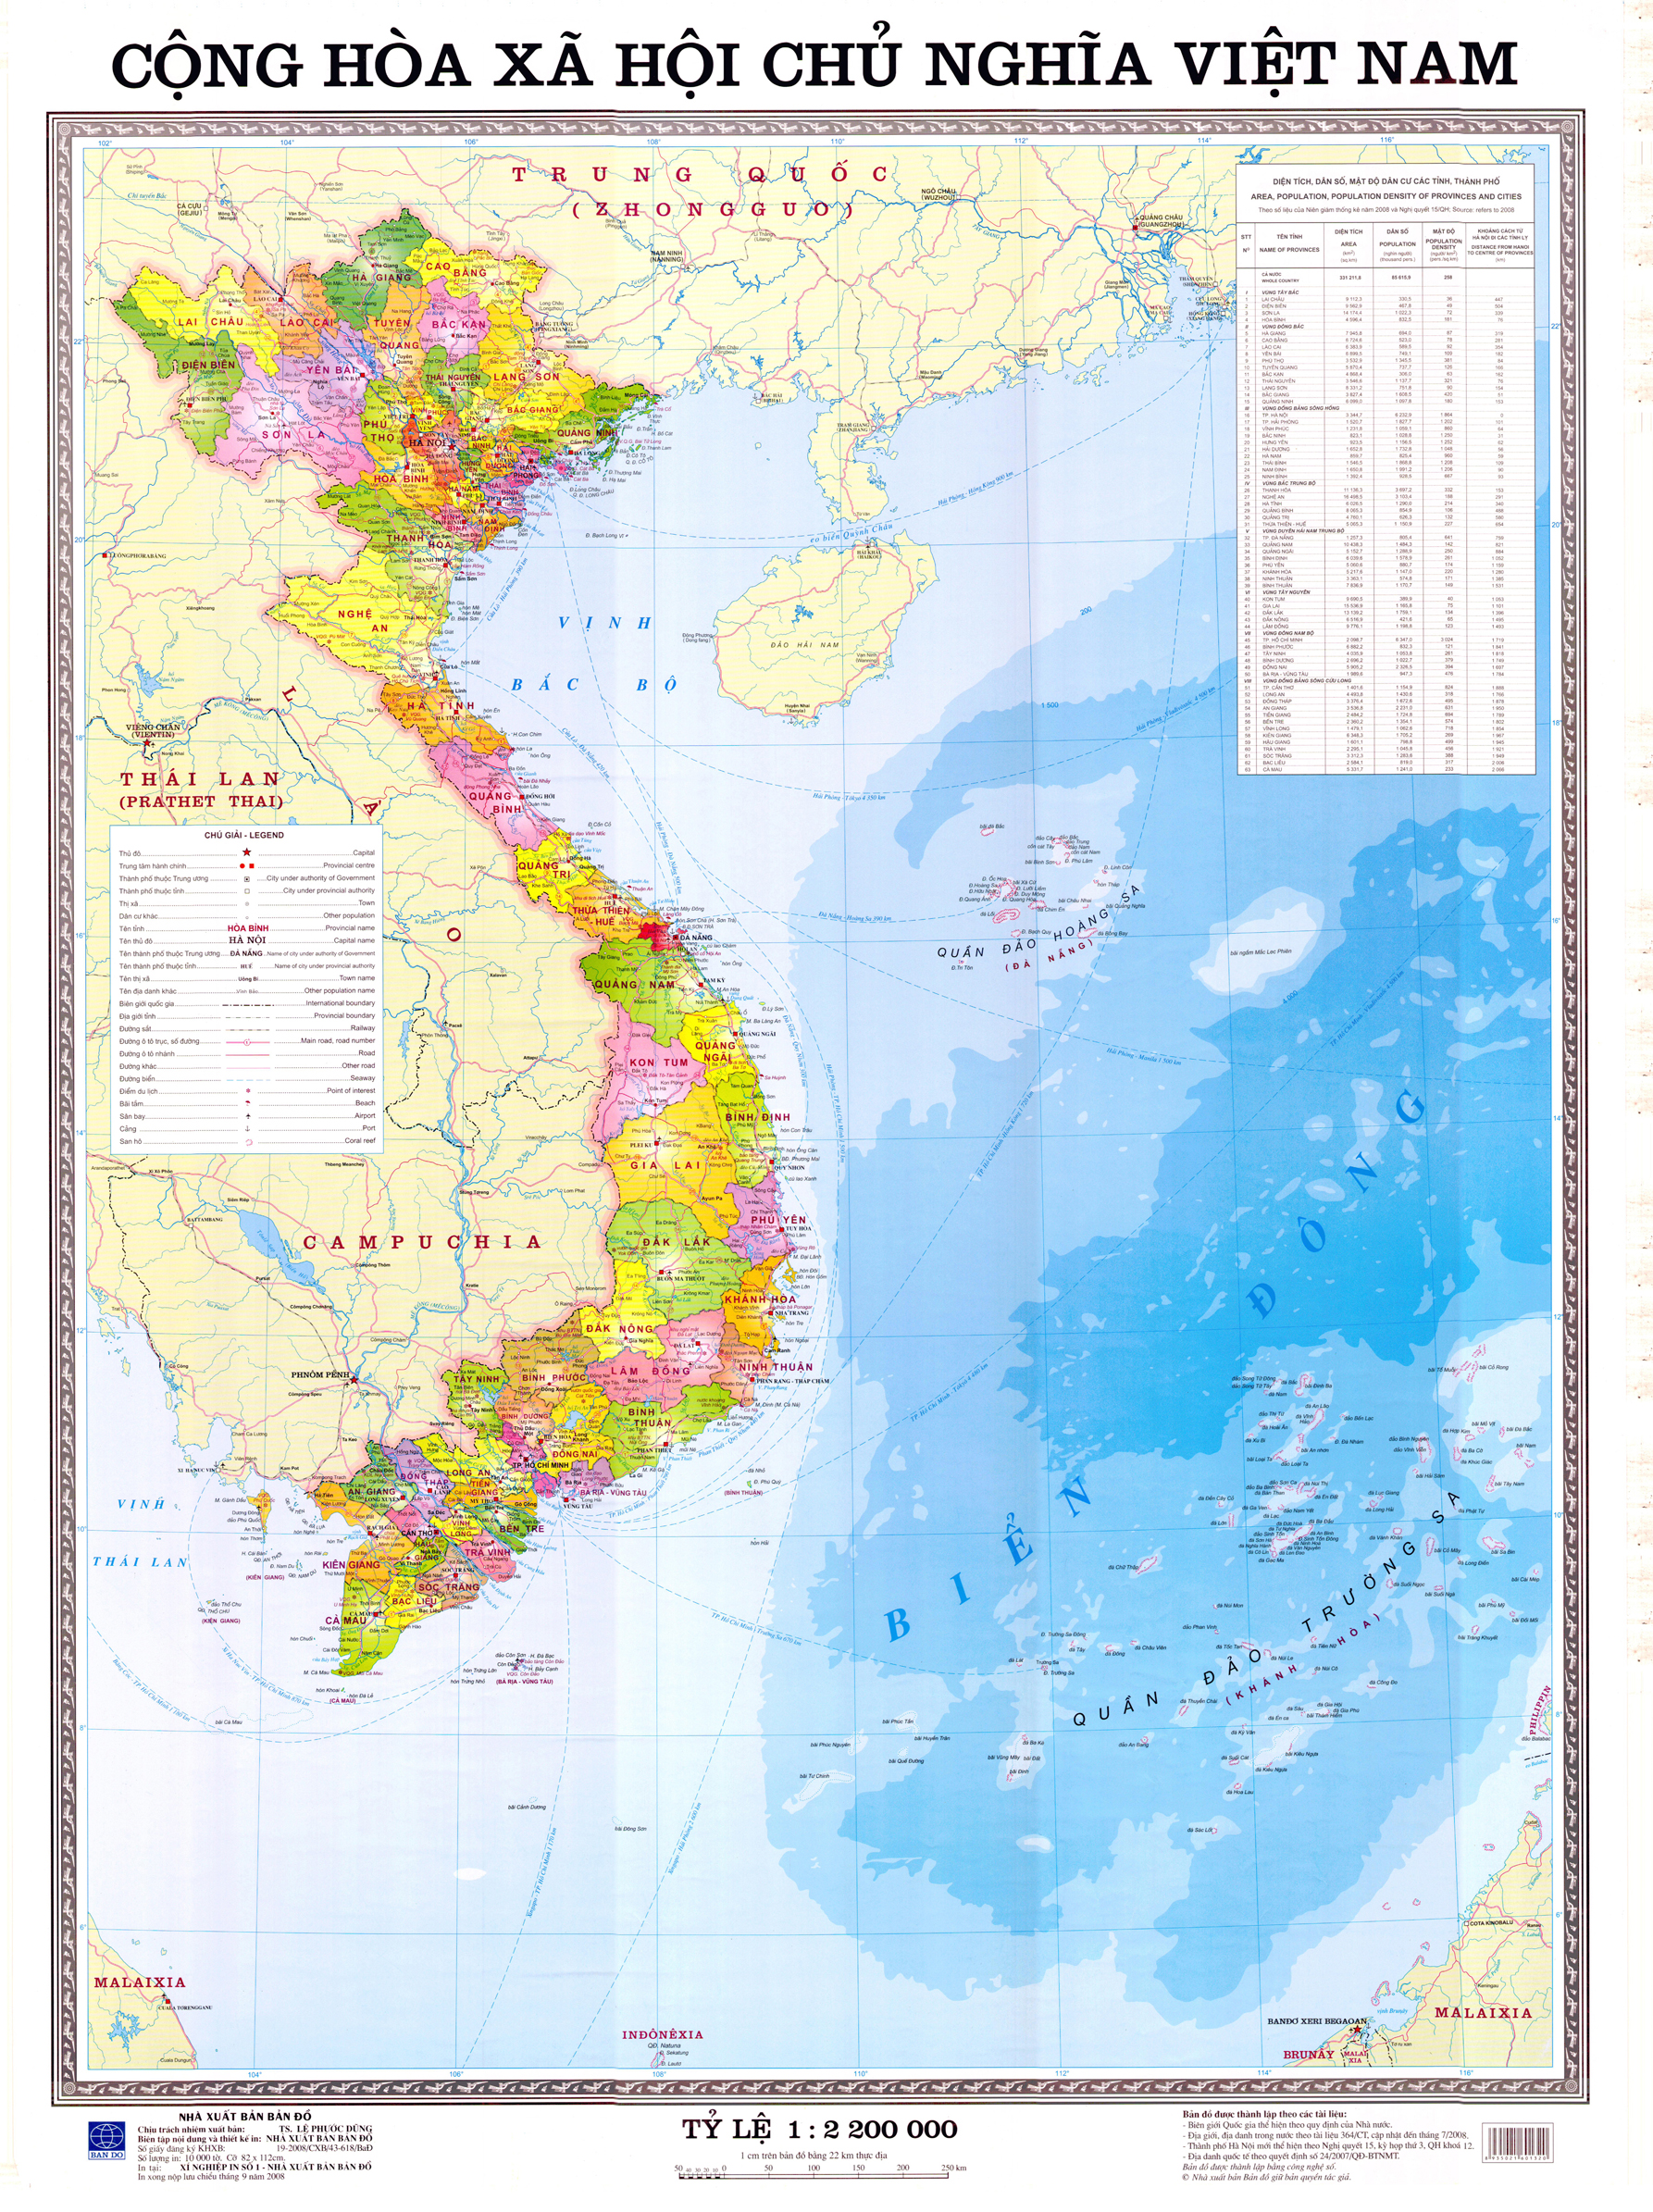 Bản đồ chuyên đề: 
Cập nhật ngay bản đồ chuyên đề mới nhất để tìm kiếm thông tin địa lý tại Việt Nam. Với nền tảng đồ họa cực kỳ chất lượng, bản đồ chuyên đề giúp bạn dễ dàng tìm kiếm thông tin địa lý như thời tiết, giao thông, du lịch và nhiều hơn nữa.